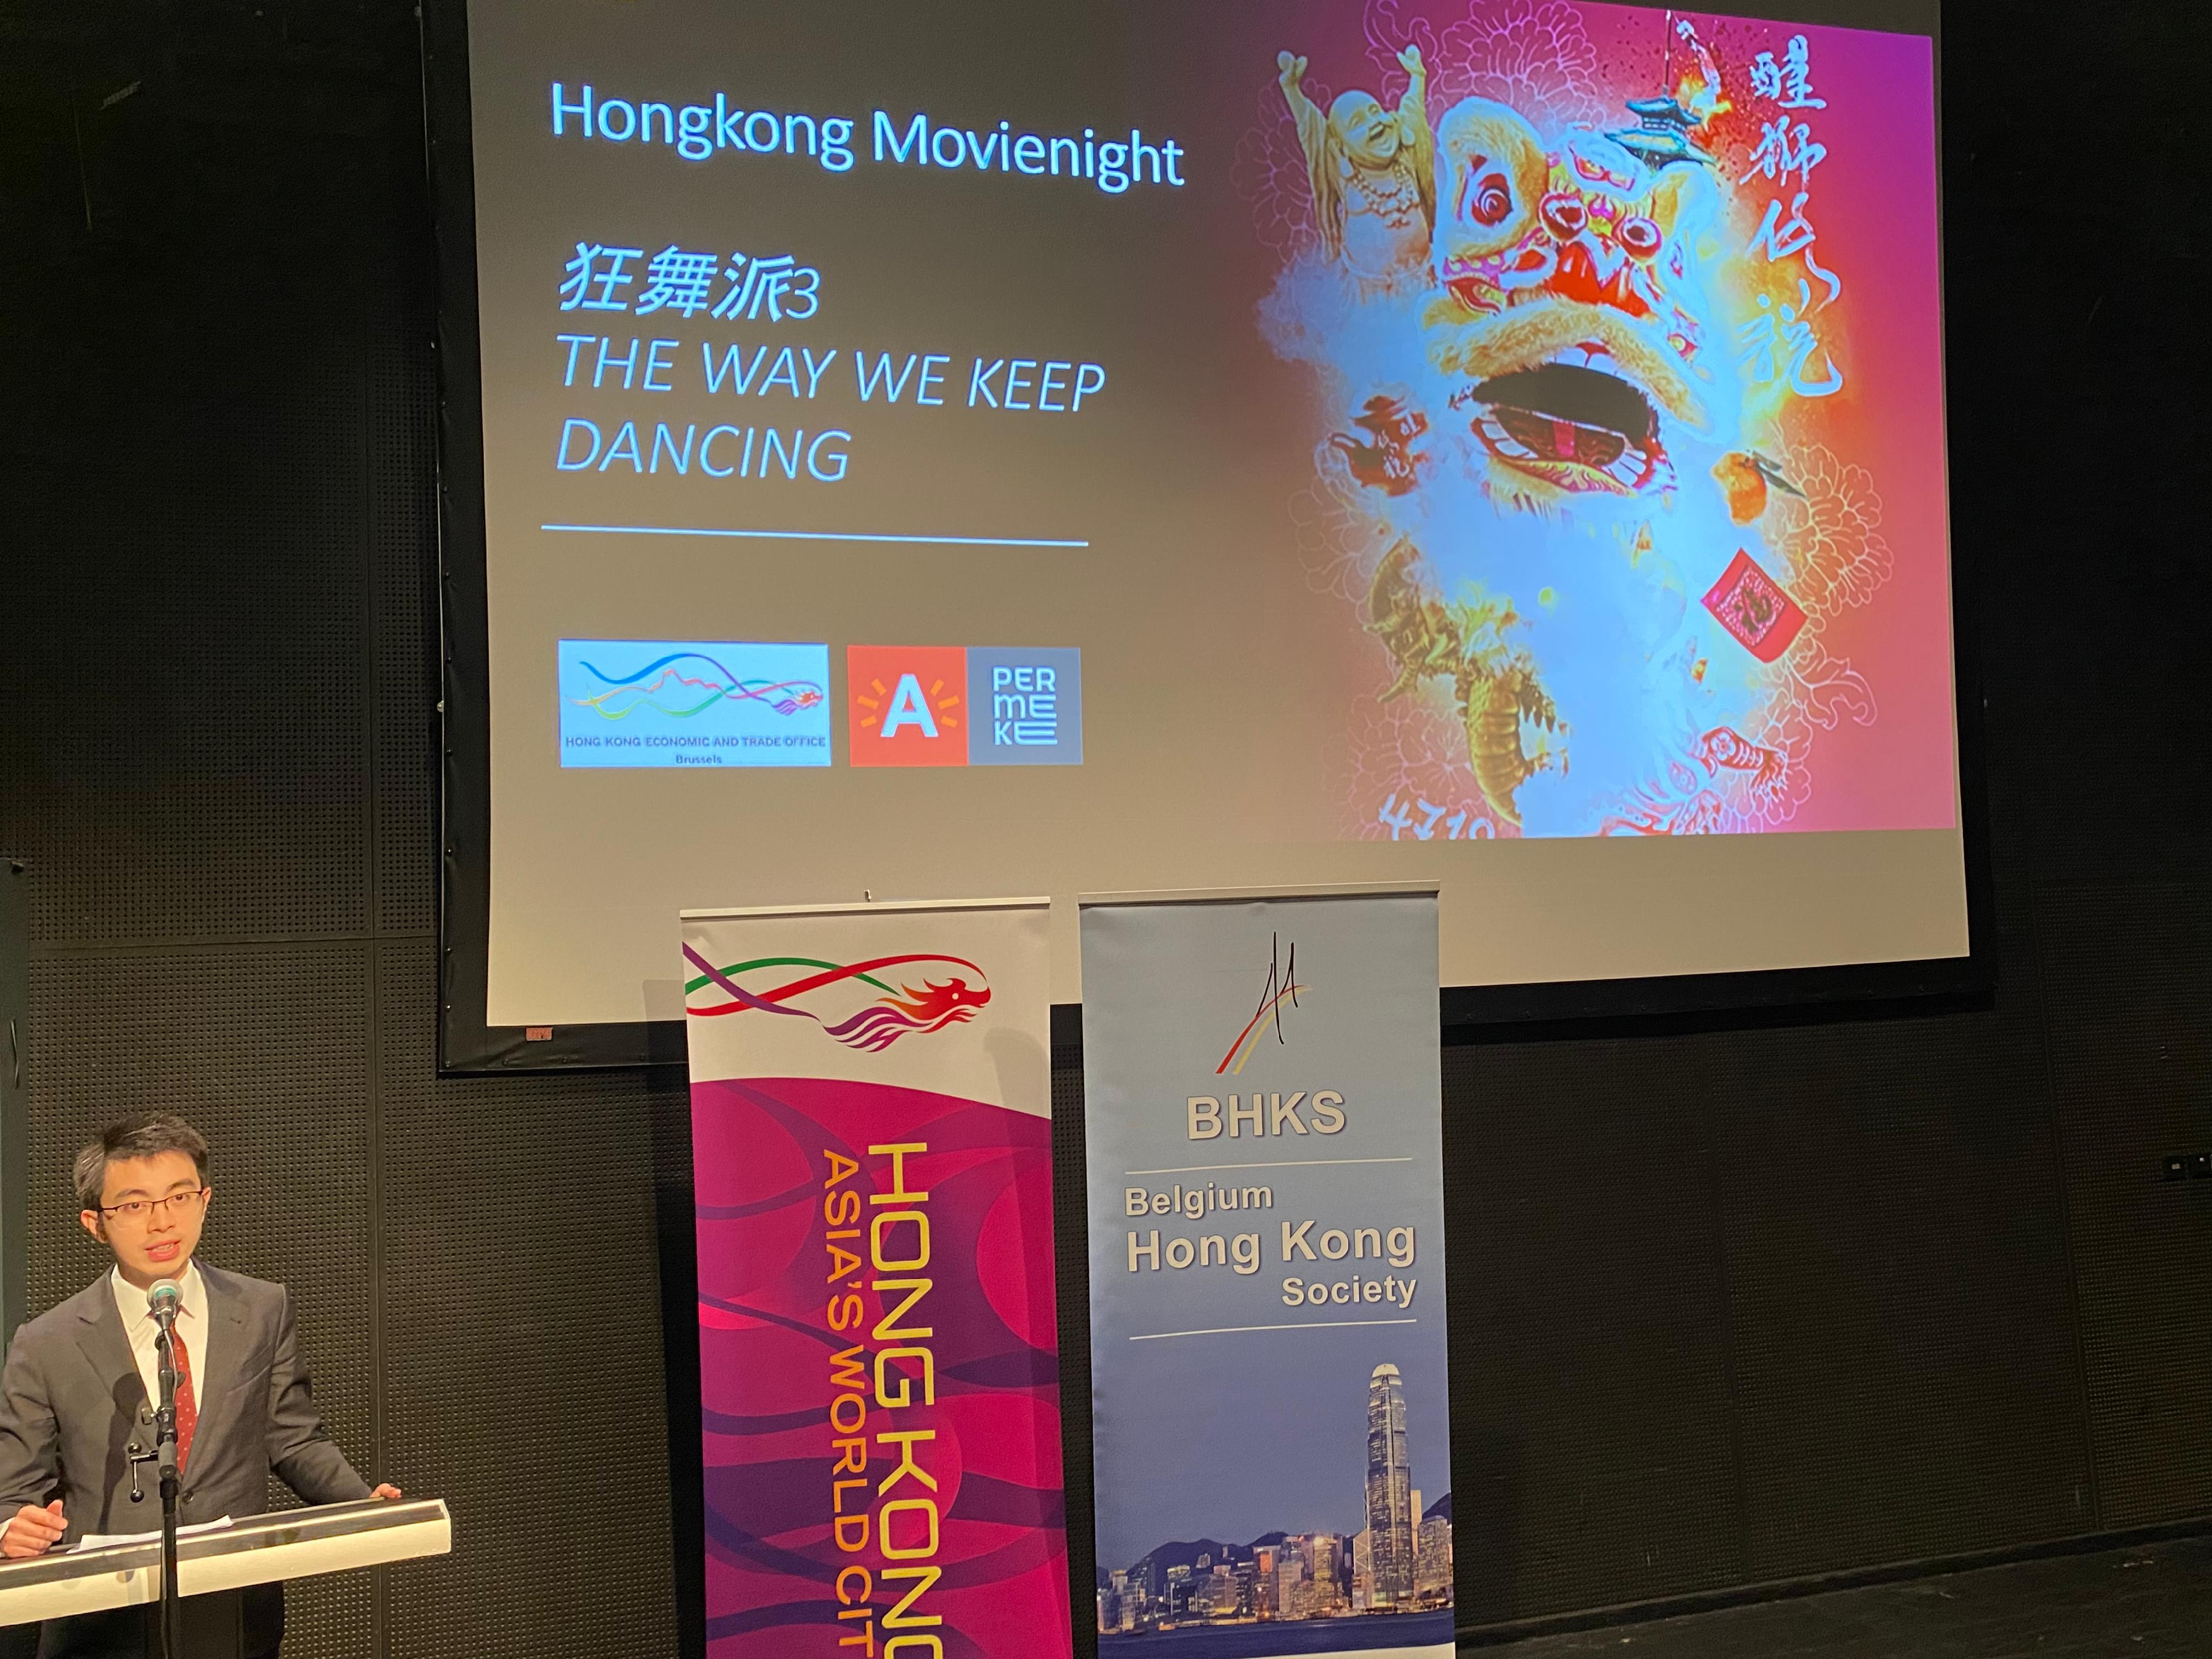 香港駐布魯塞爾經濟貿易辦事處署理副代表蔡禧揚二月三日（安特衞普時間）於比利時安特衞普舉辦的《醒獅傳說》展覽——香港電影之夜的開幕儀式上致辭。